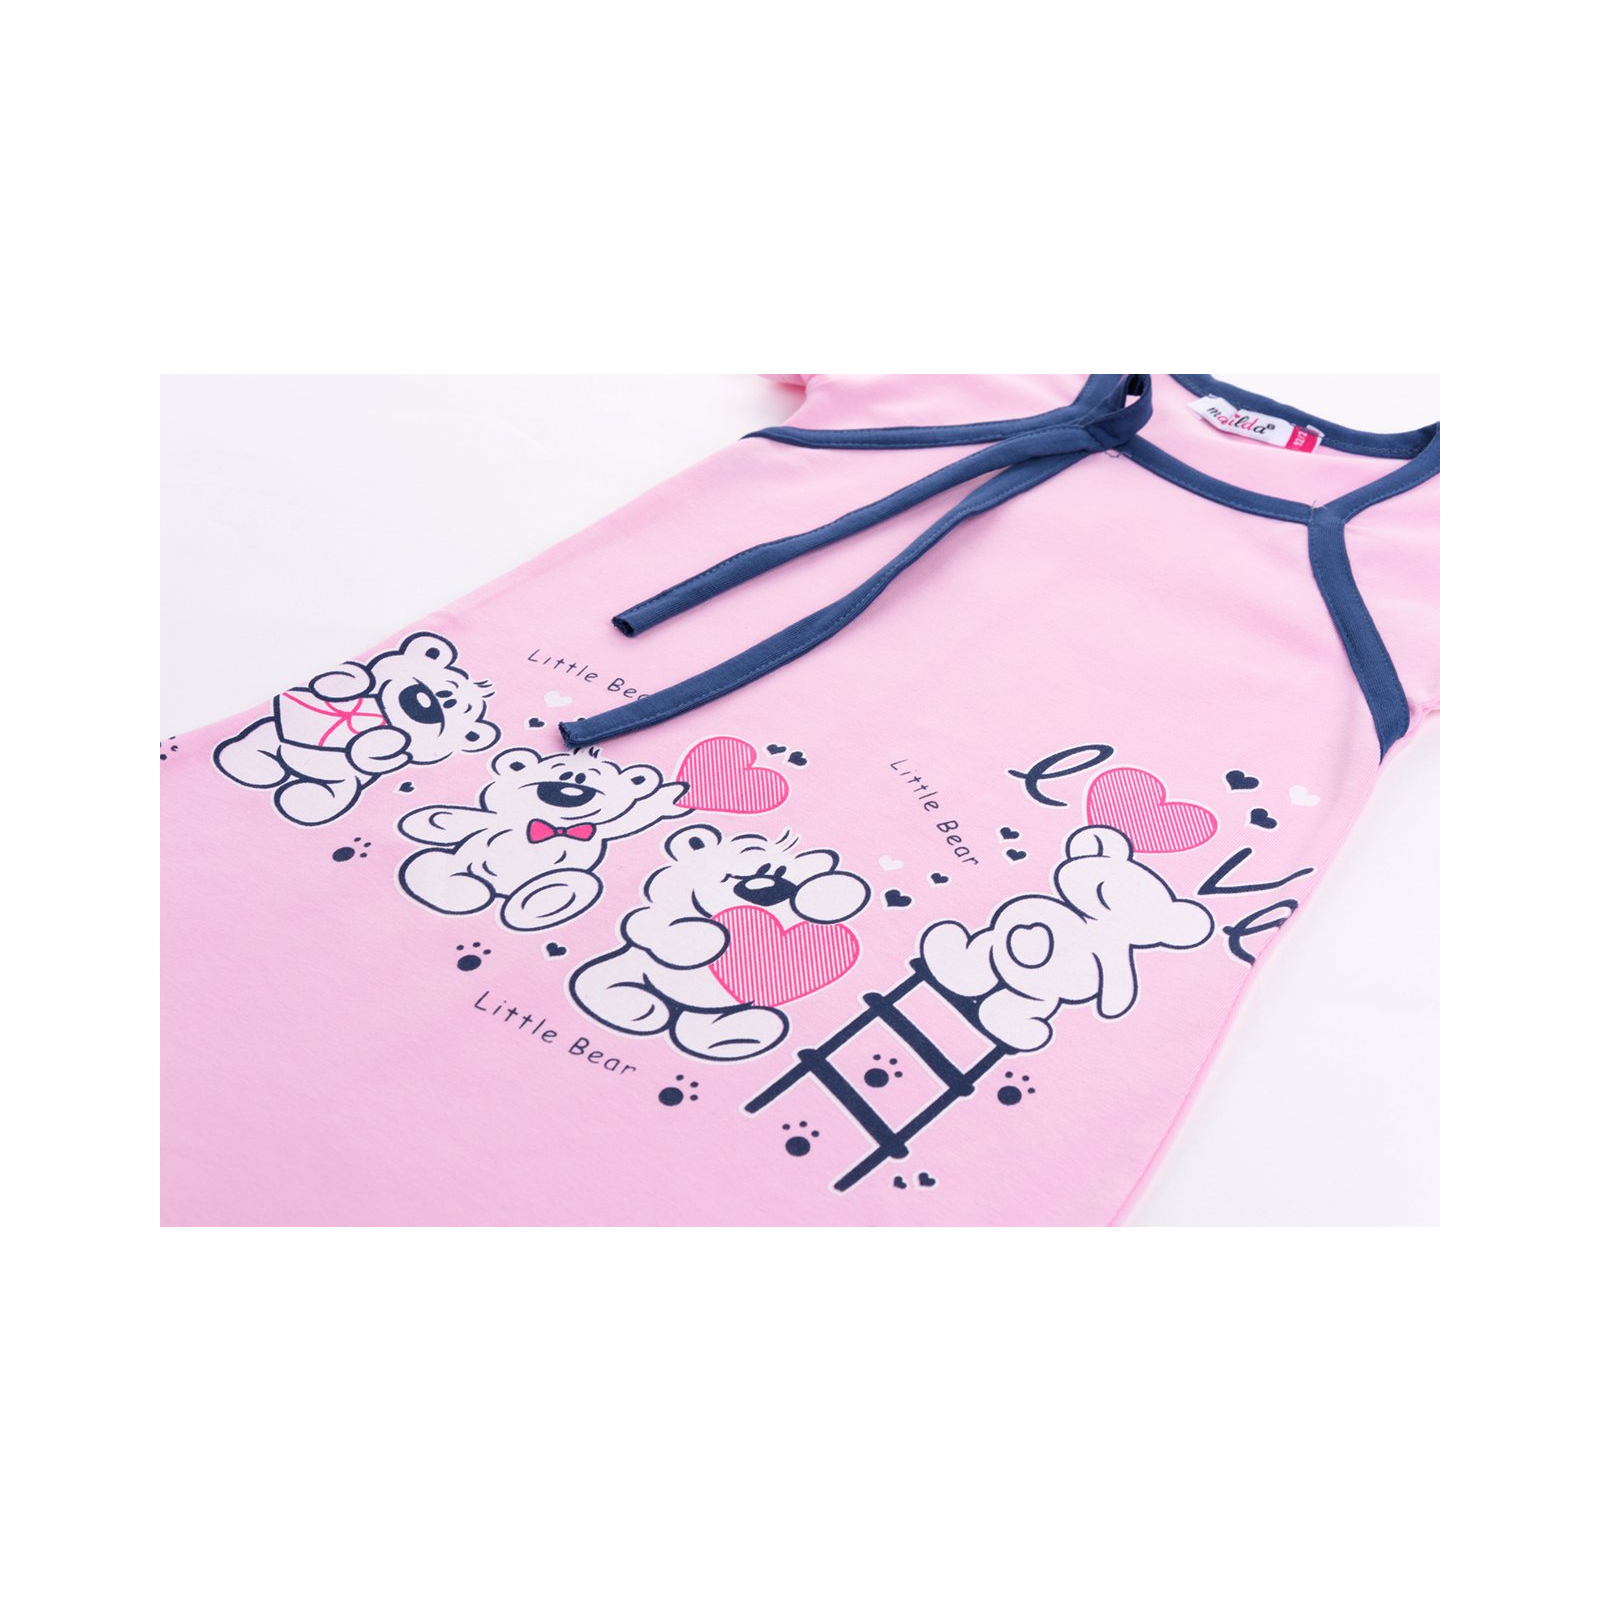 Пижама Matilda и халат с мишками "Love" (7445-140G-pink) изображение 8